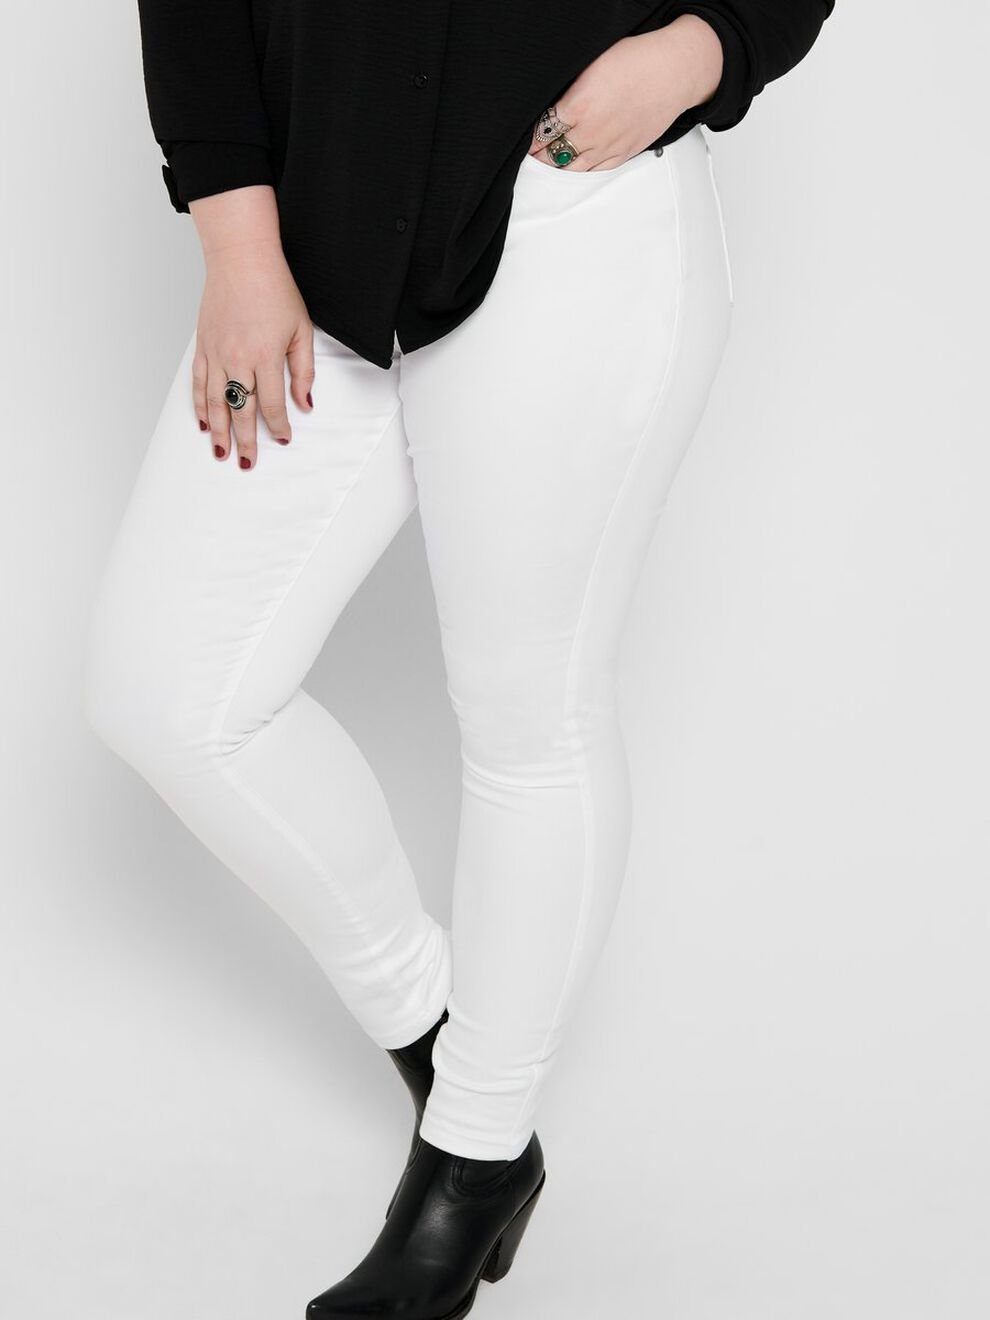 ONLY Jeans 3908 CARAUGUSTA Übergröße Plus Stretch Skinny-fit-Jeans Size in Denim CARMAKOMA Curvy Skinny Weiß (1-tlg)